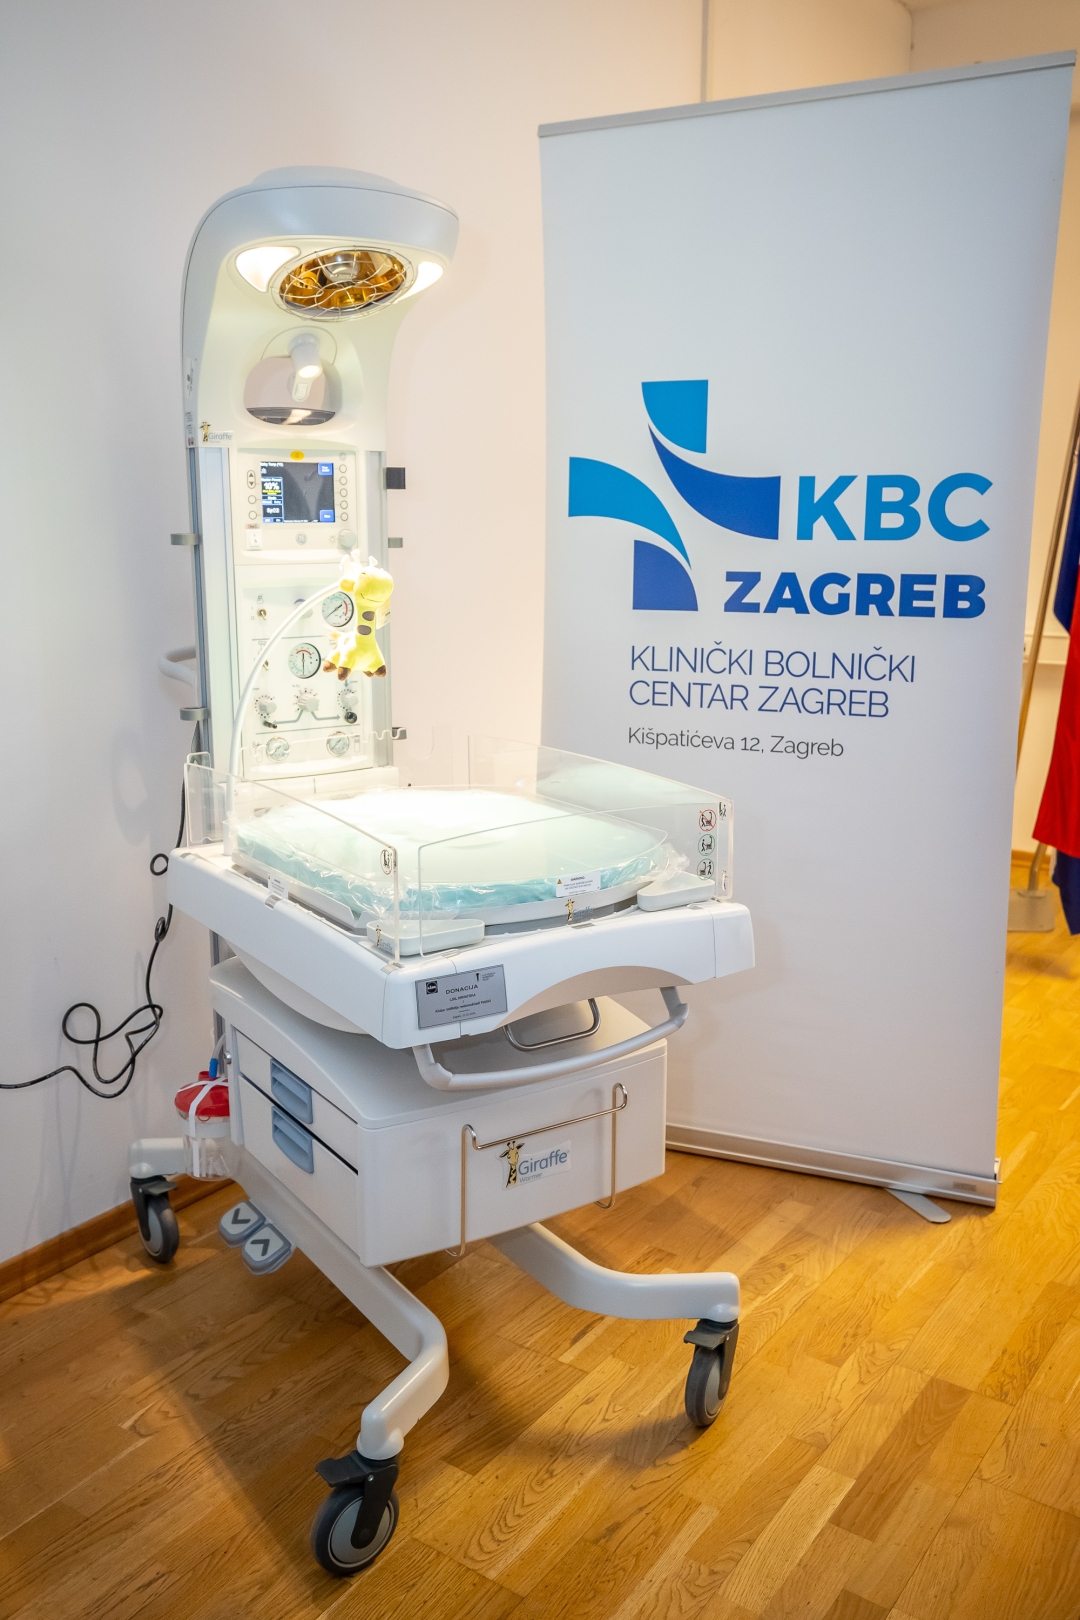 Lidl i Udruga Palčići uručili su vrijednu donaciju KBC-u Zagreb za pomoć prijevremeno rođenim bebama